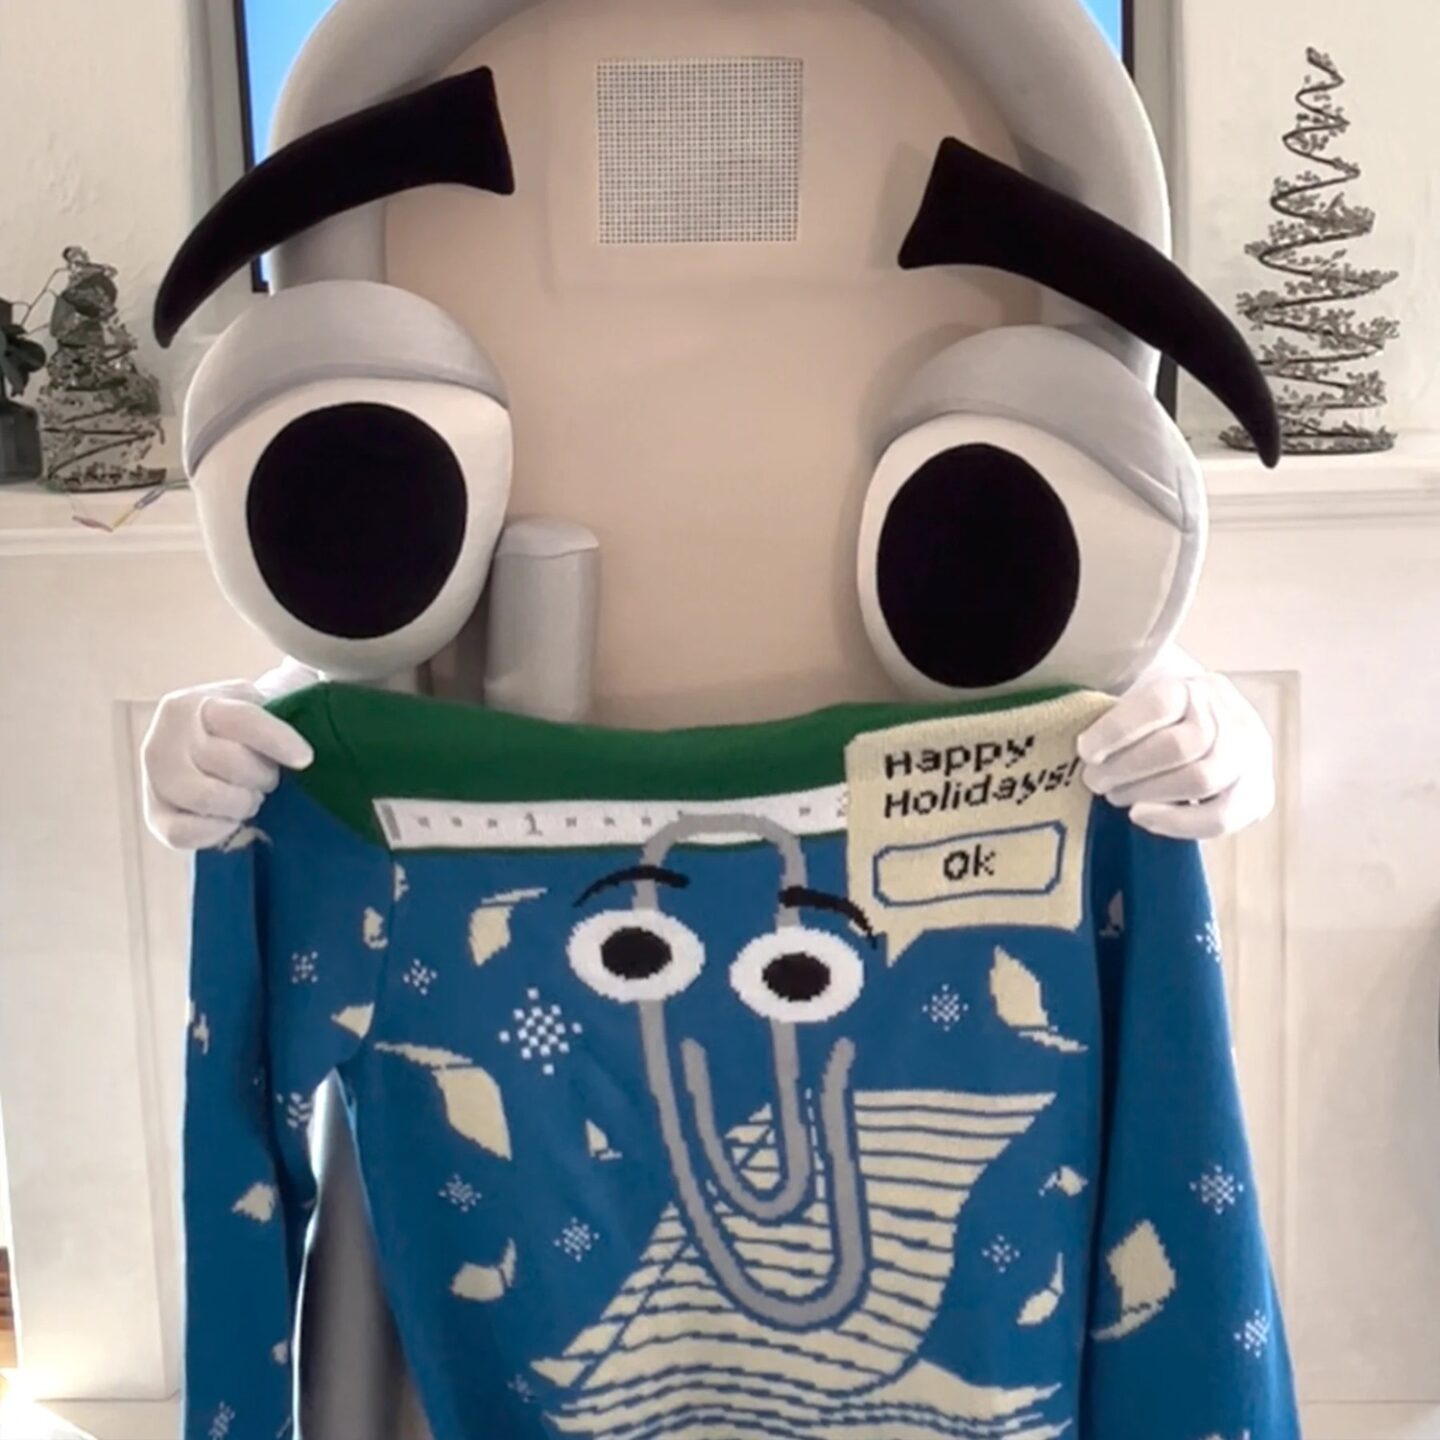 Черговий “потворний” різдвяний светр від Microsoft — цього разу за мотивами “Скріпки”